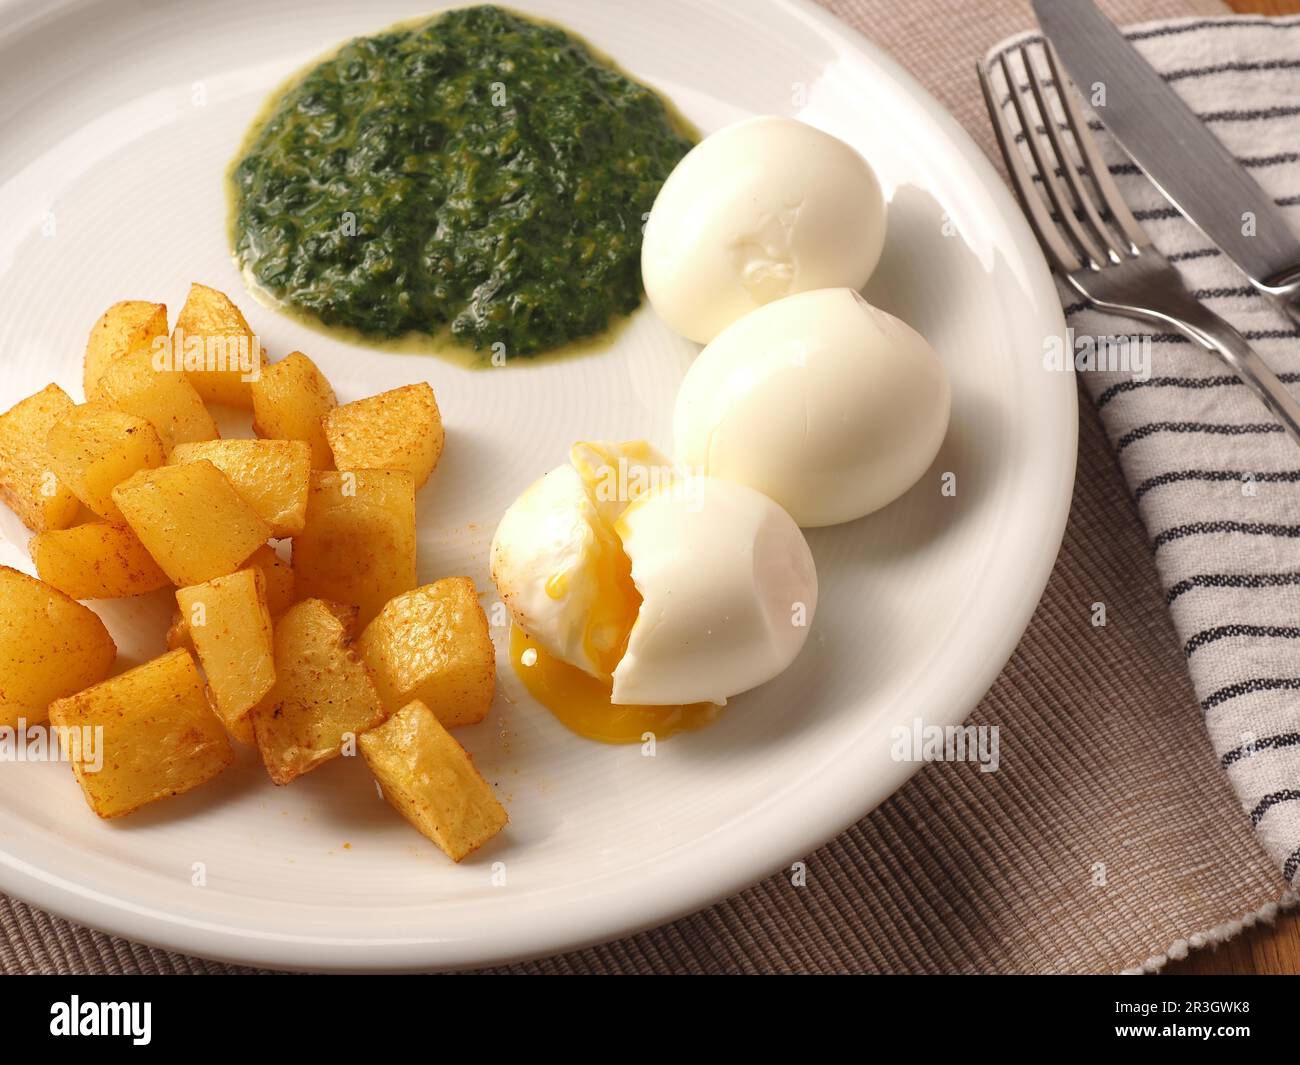 Épinards biologiques servis avec des cubes de pommes de terre épicés et un œuf biologique bouilli sur une assiette blanche. Une alimentation saine Banque D'Images